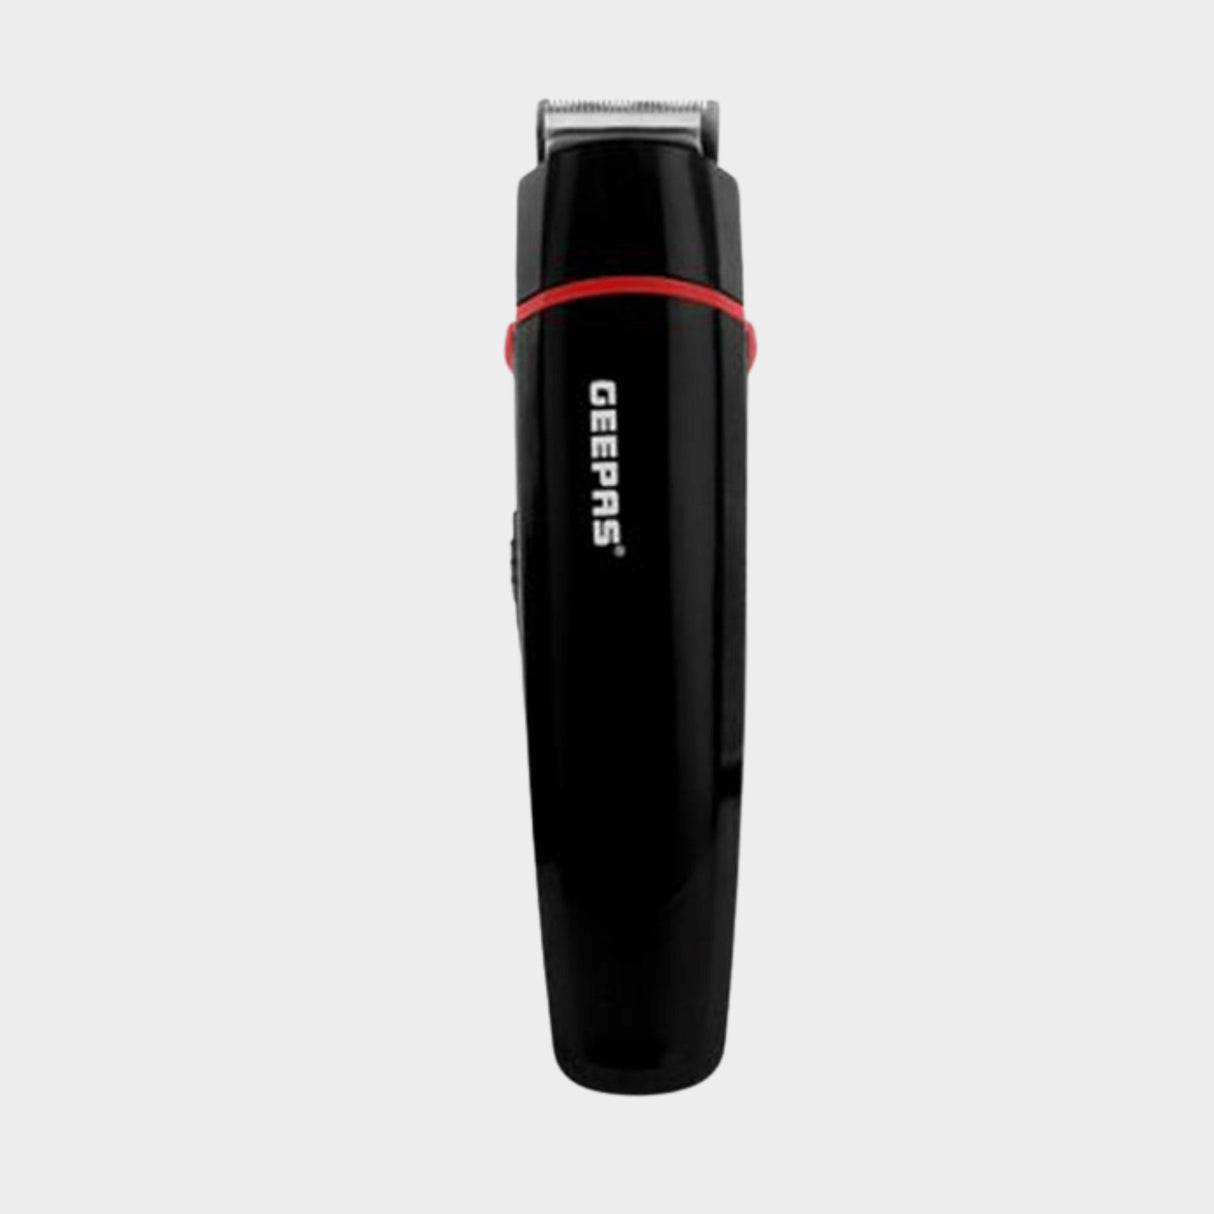 Geepas GTR8128N 7-in-1 Hair Trimmer - Cordless Grooming Kit - KWT Tech Mart